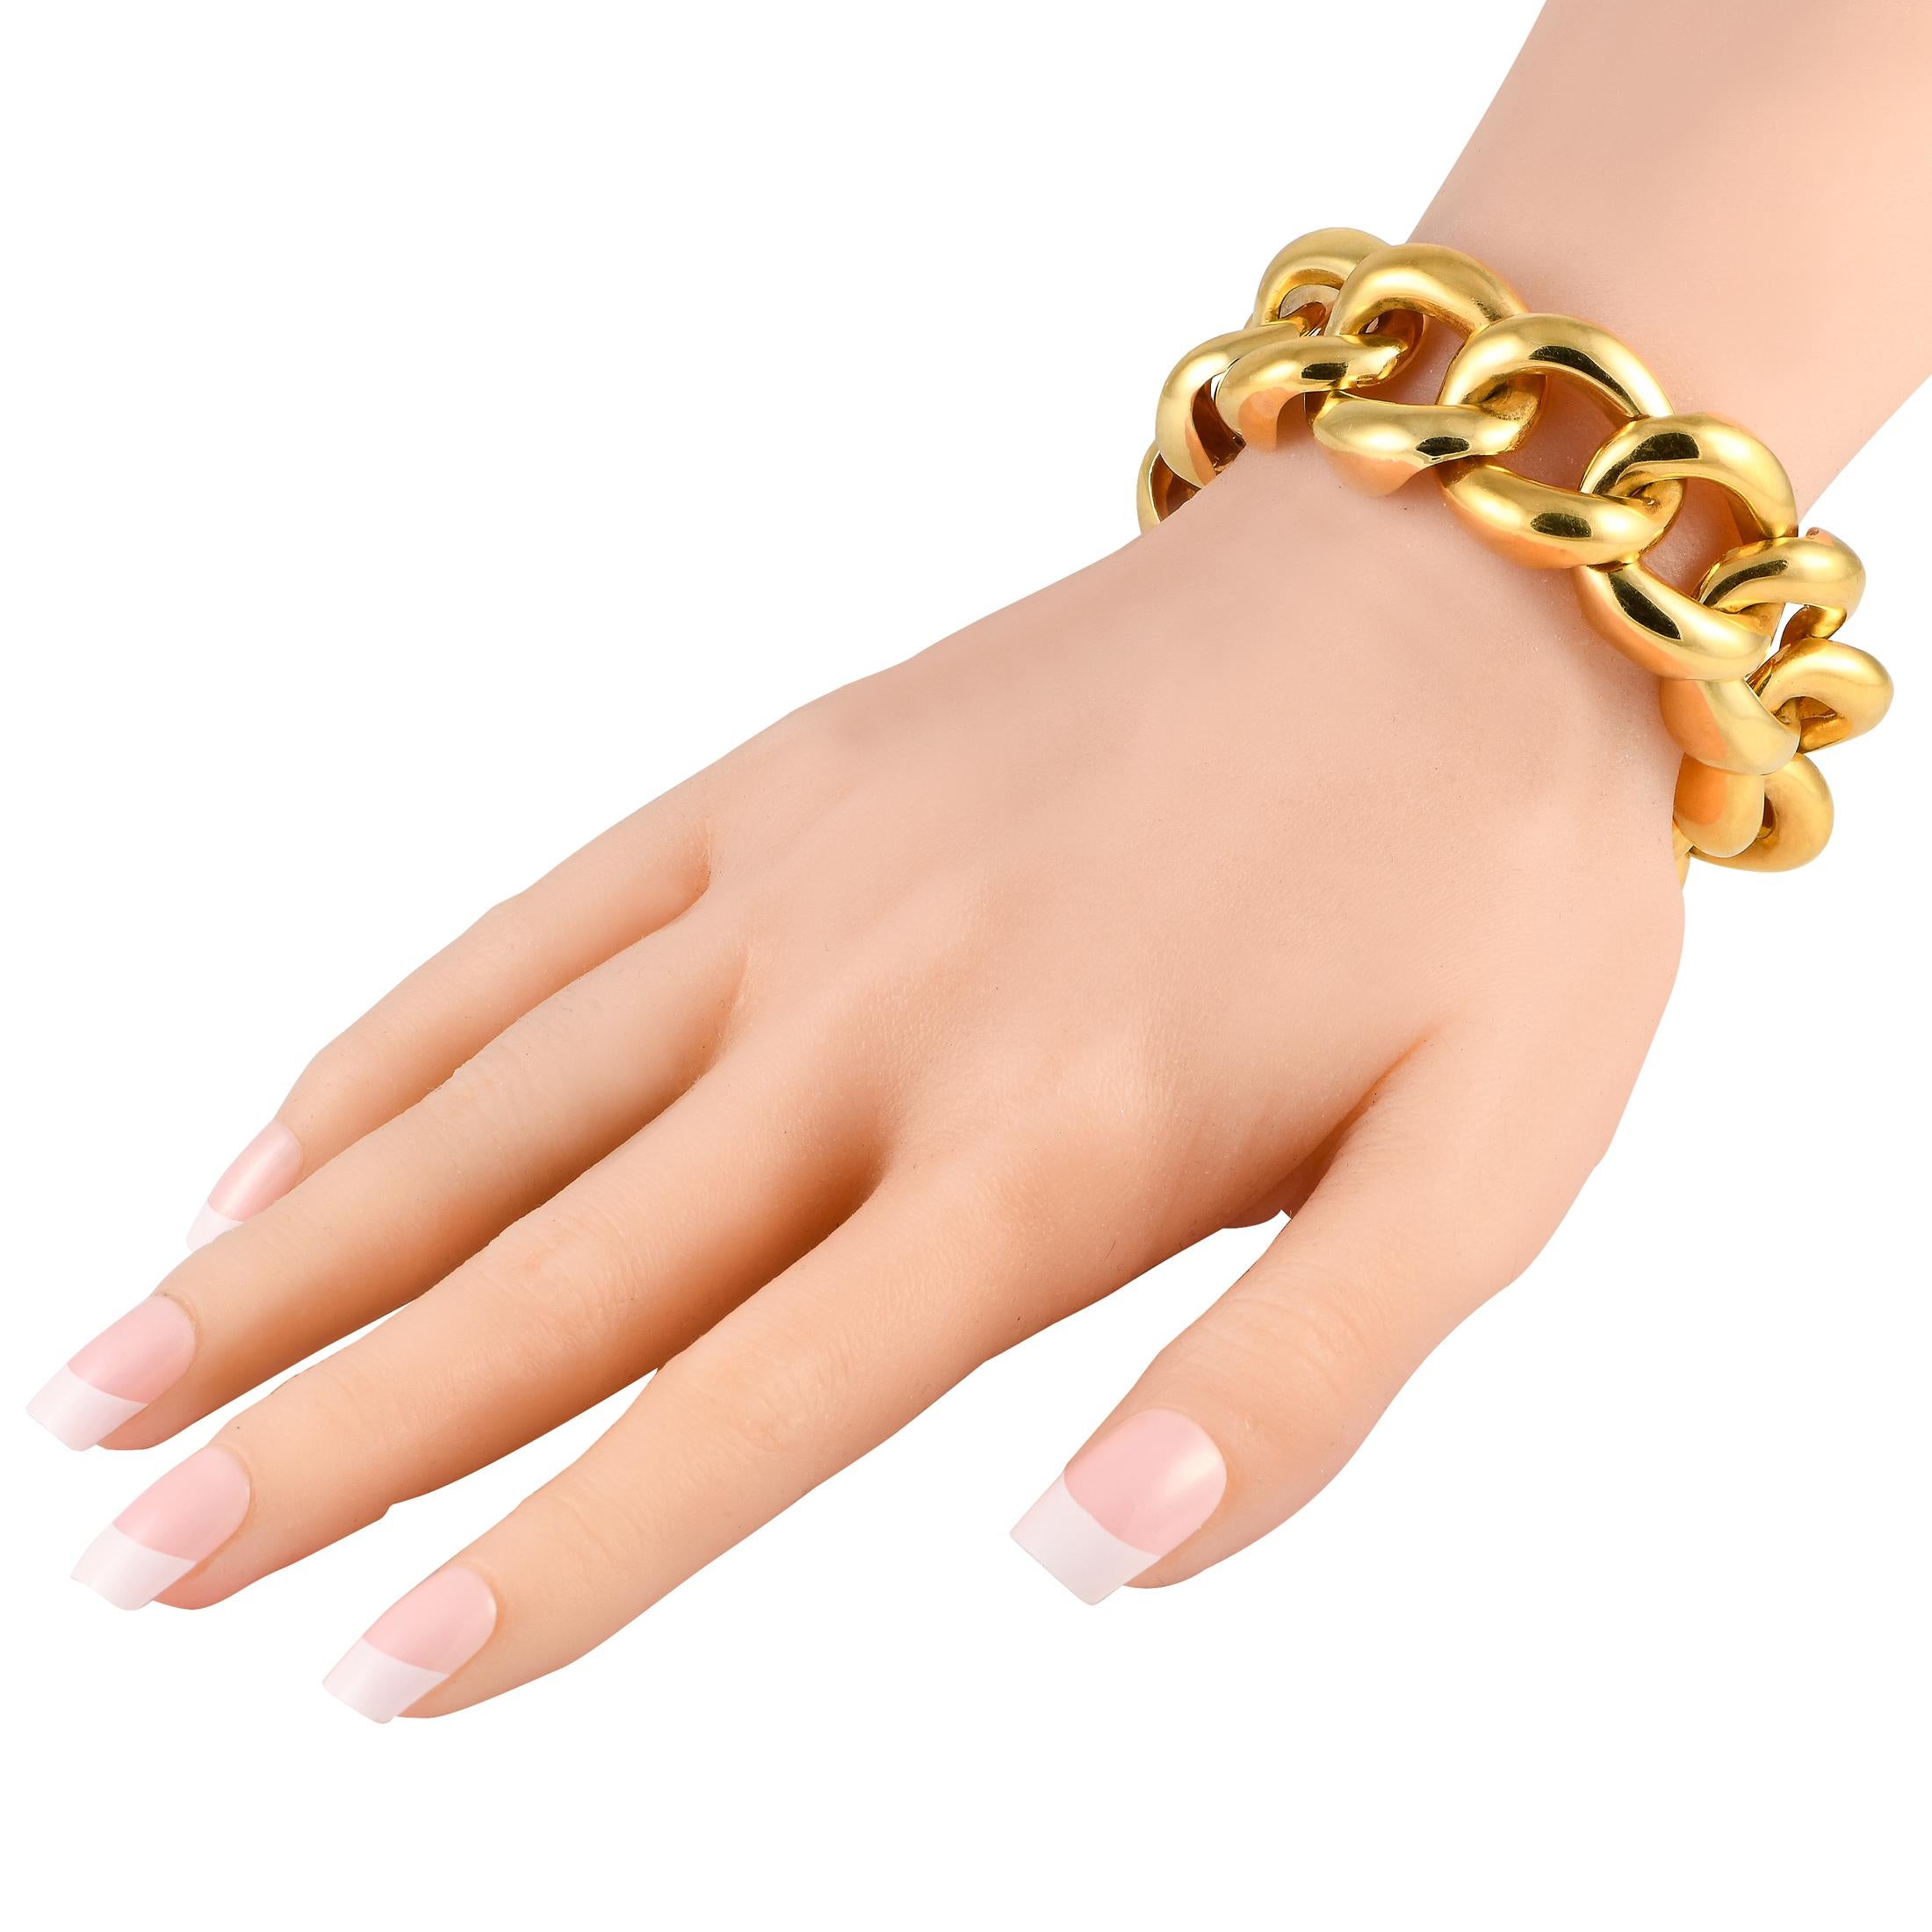 Ce bracelet à maillons en or jaune 18 carats massif, lourd et très épais, affiche son style avec une confiance inébranlable. Il mesure 8 cm de long et est muni d'un fermoir caché sécurisé. Chaque maillon est doté d'une finition polie lisse et